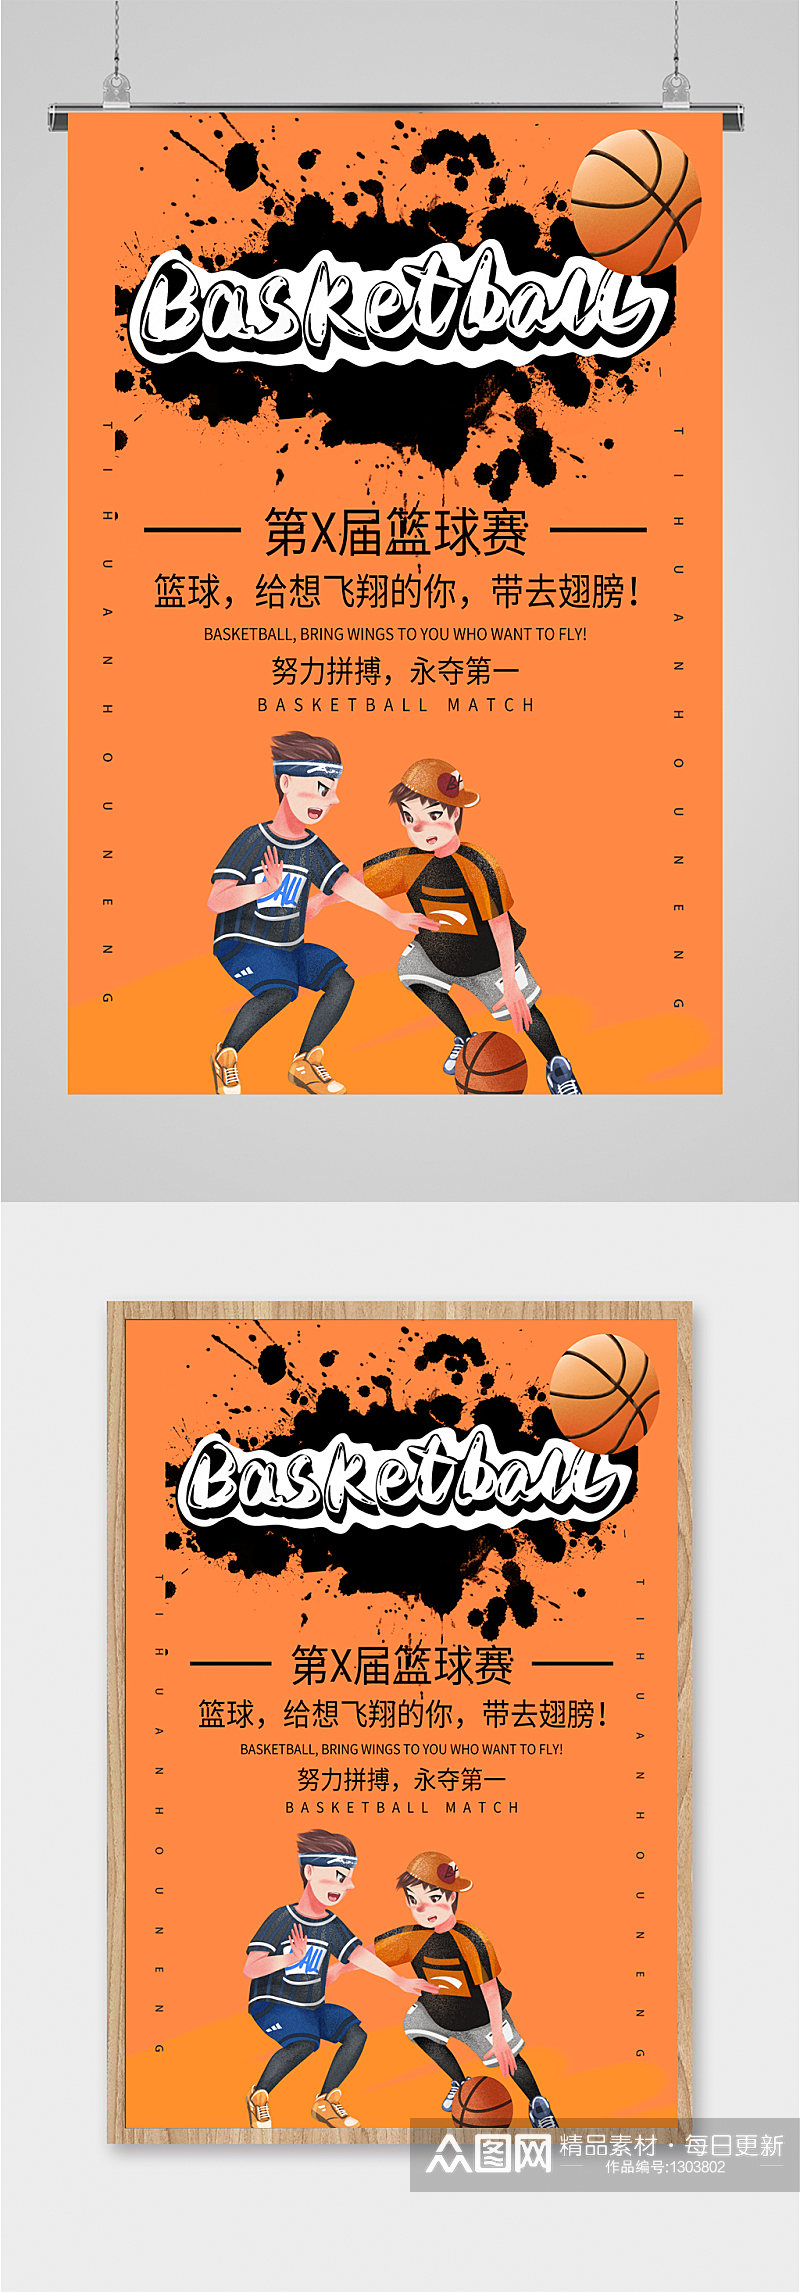 校园篮球比赛宣传海报素材